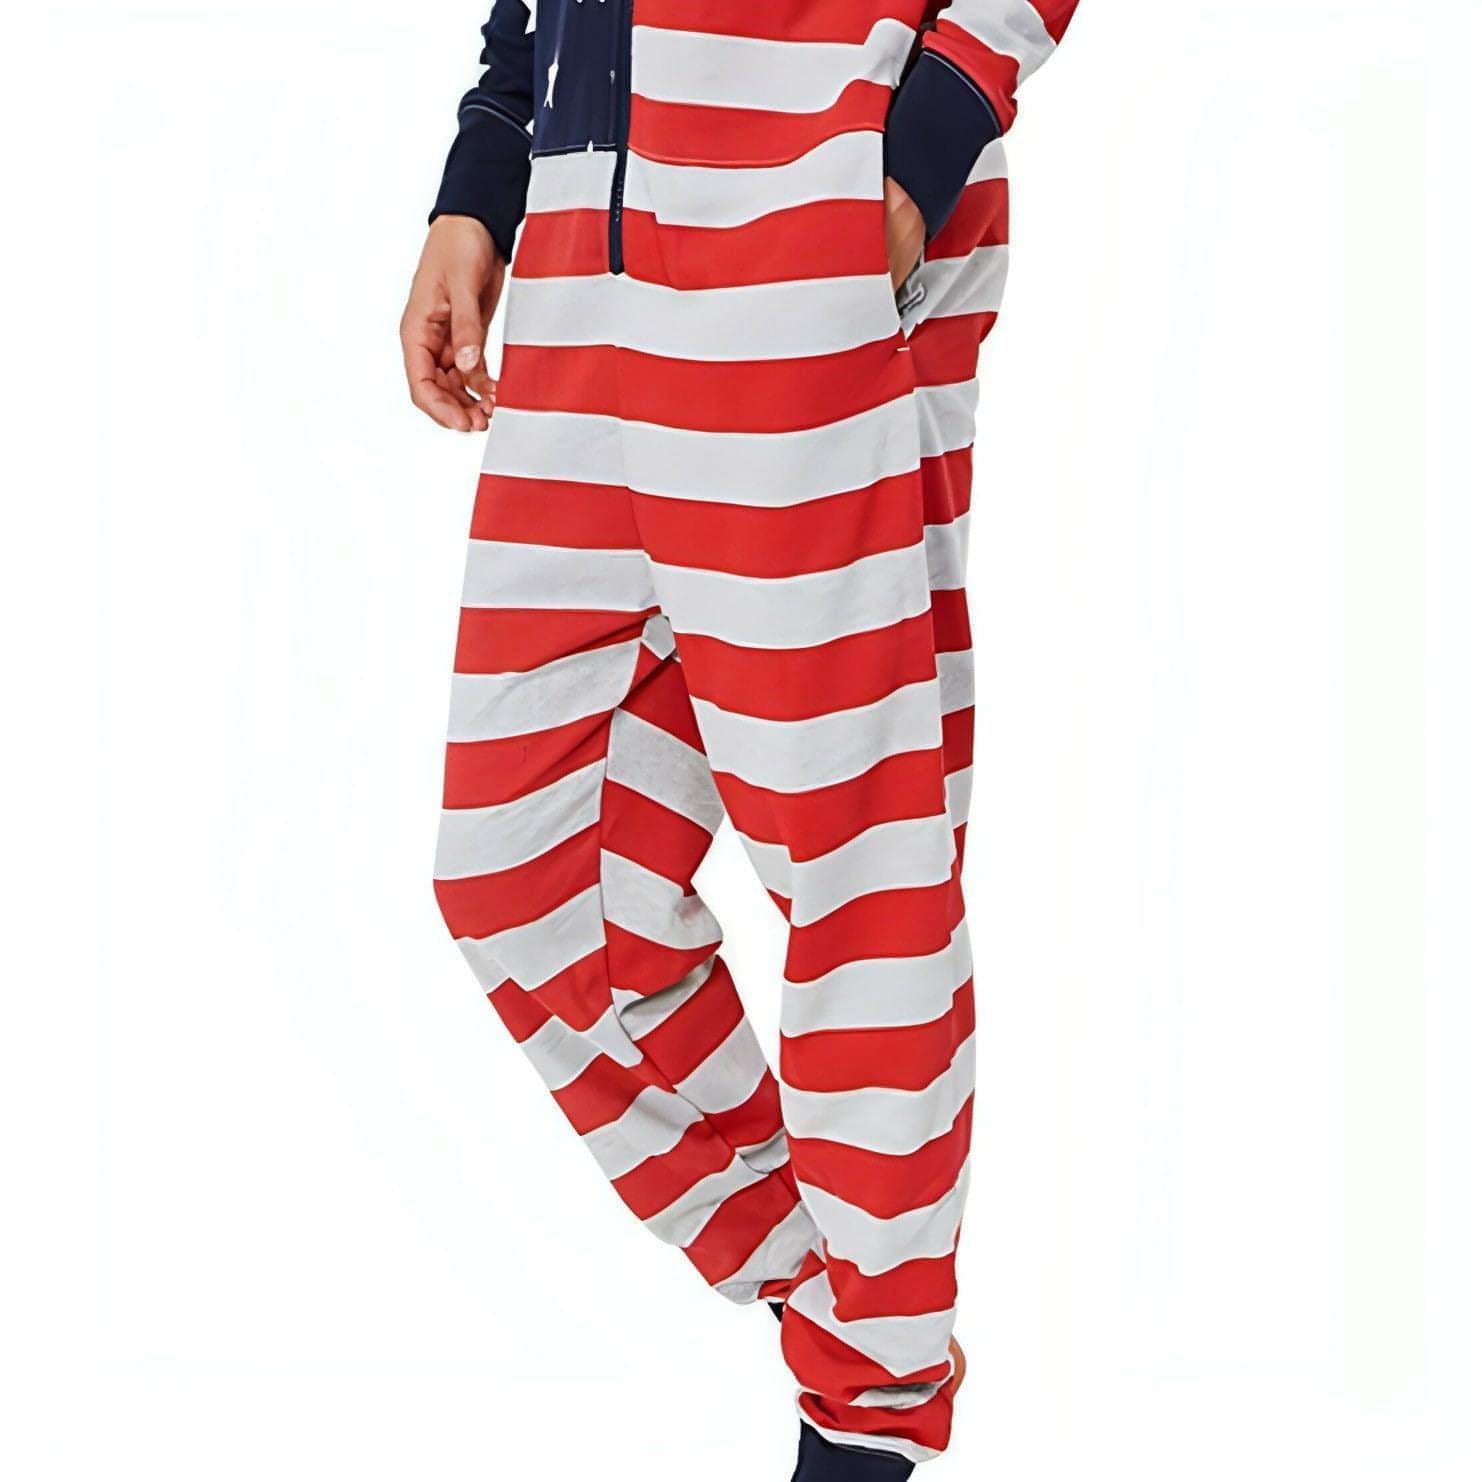 Tokyo Laundry USA Flag Hooded Long Sleeve Onesie – Start Fitness